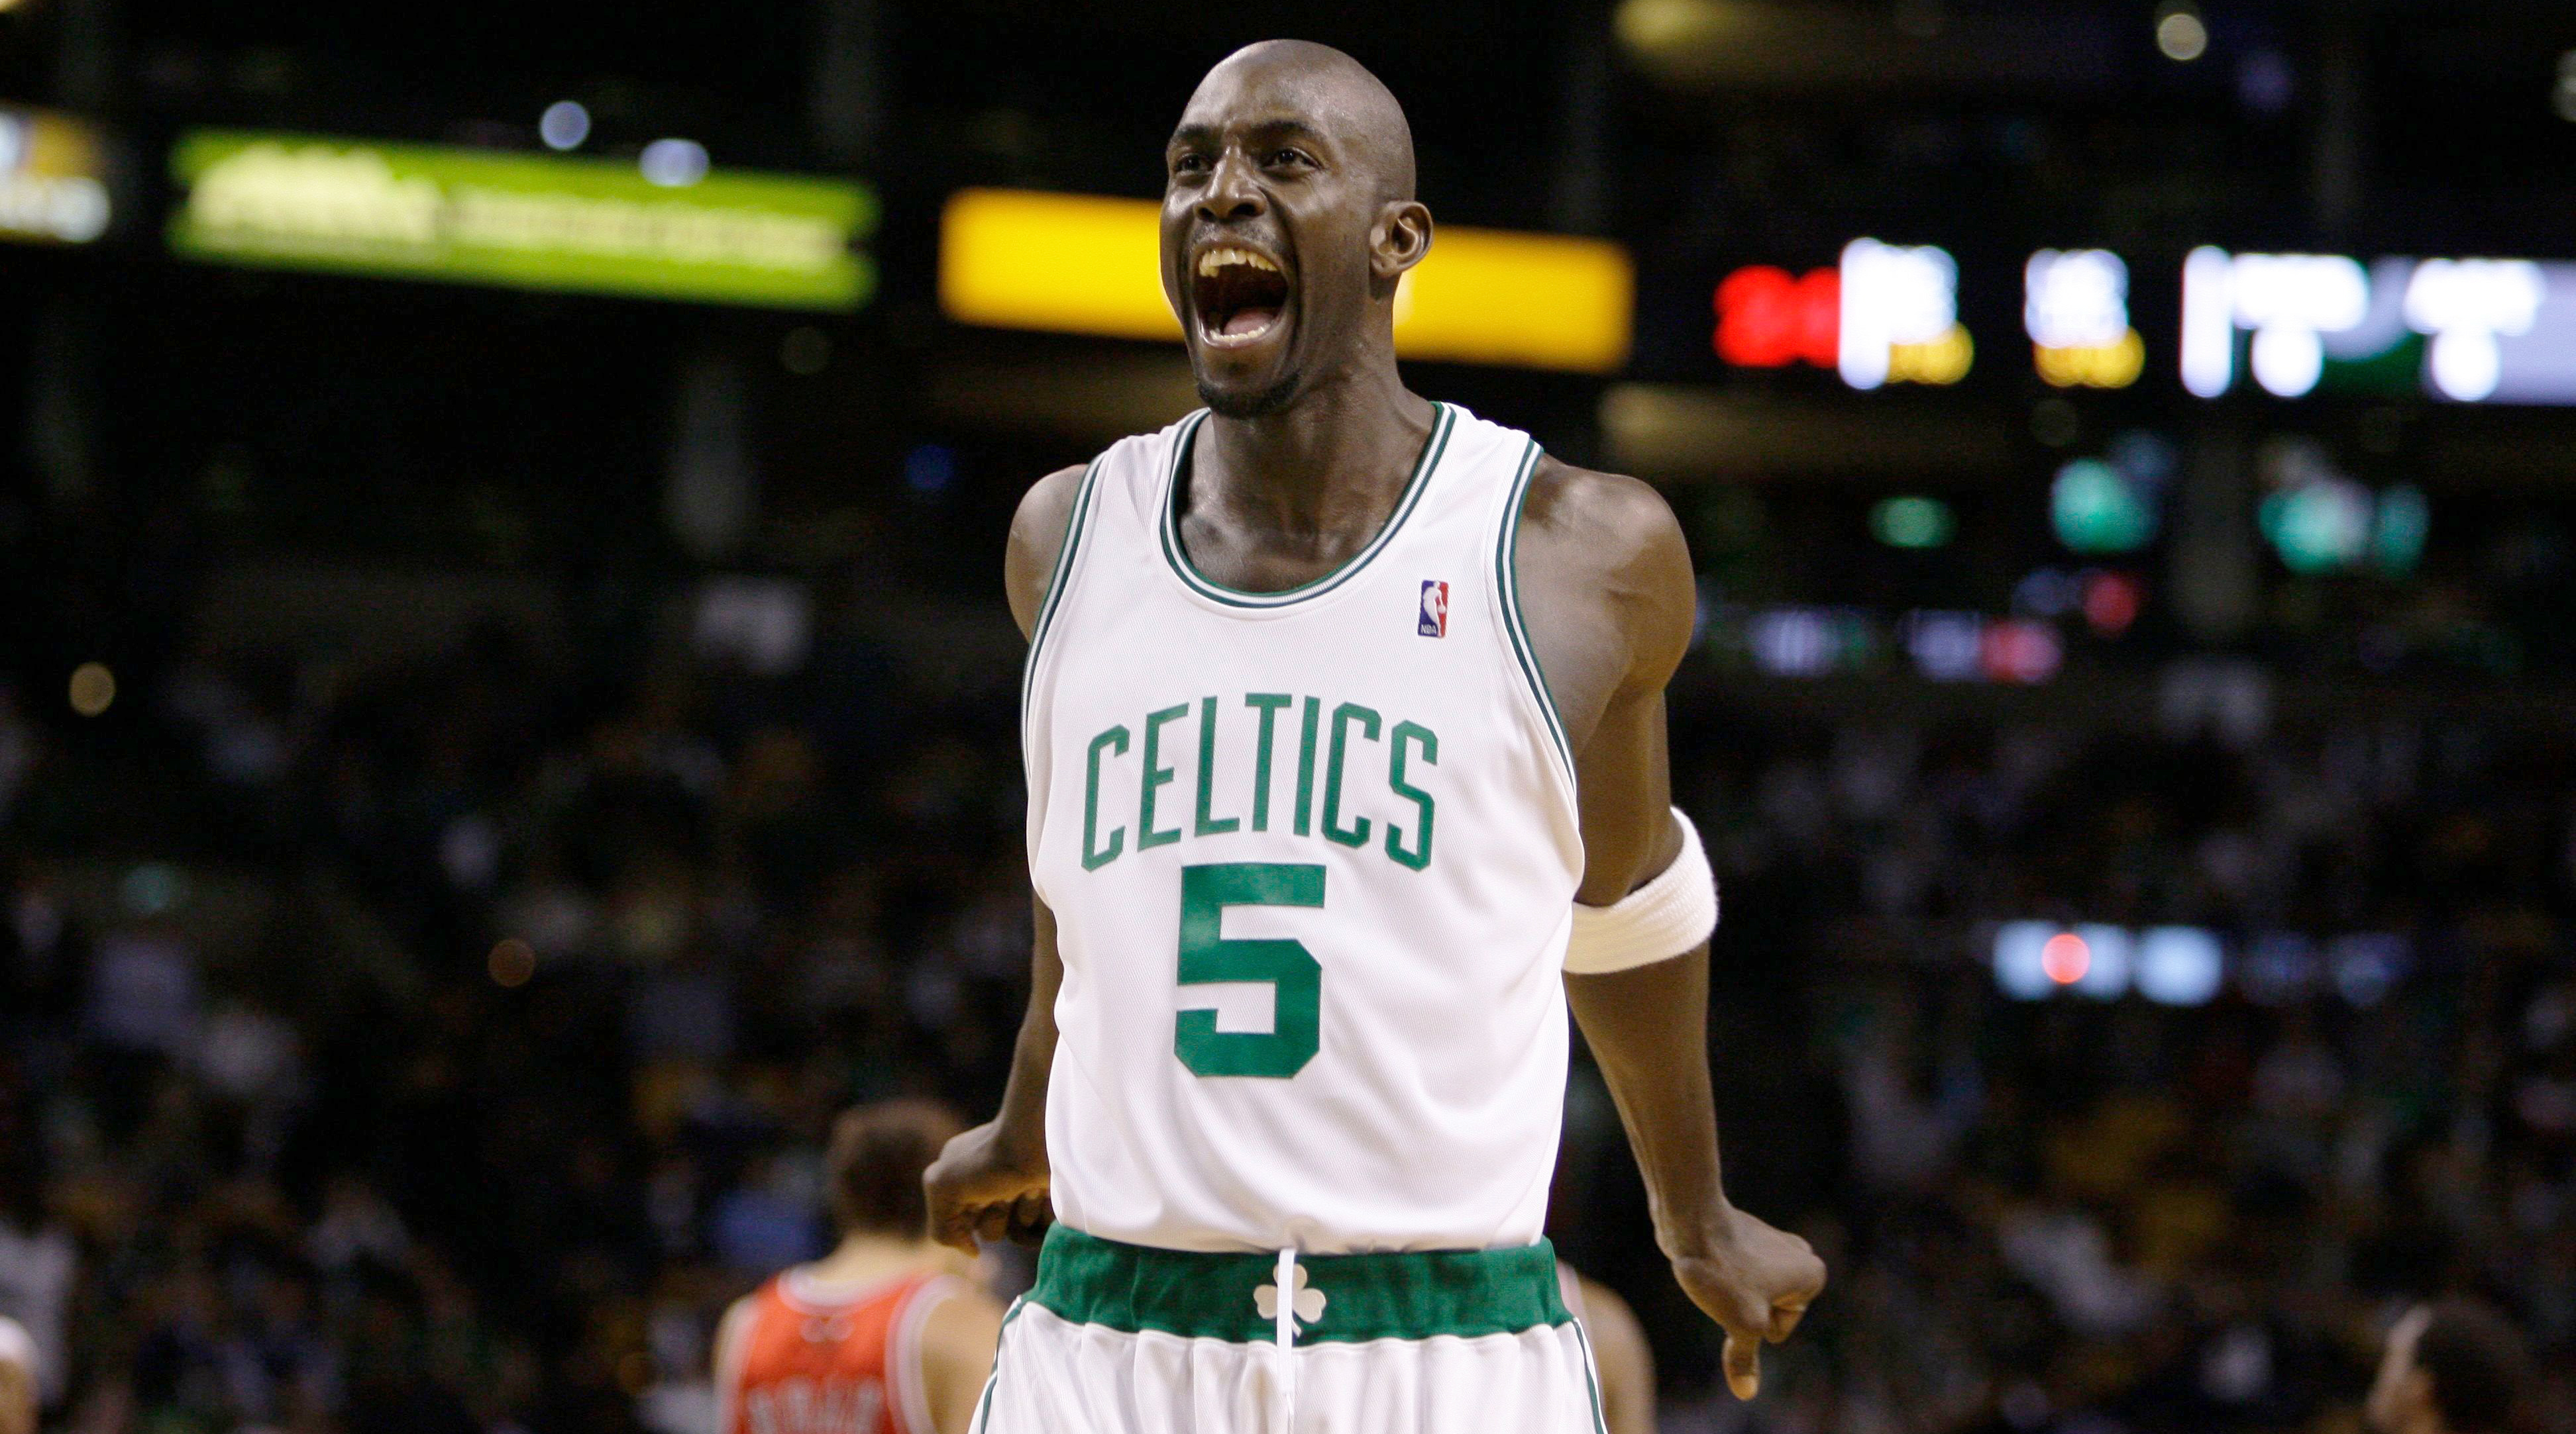 NBA highlights on March 13: Celtics retire Garnett's No. 5 Jersey - CGTN